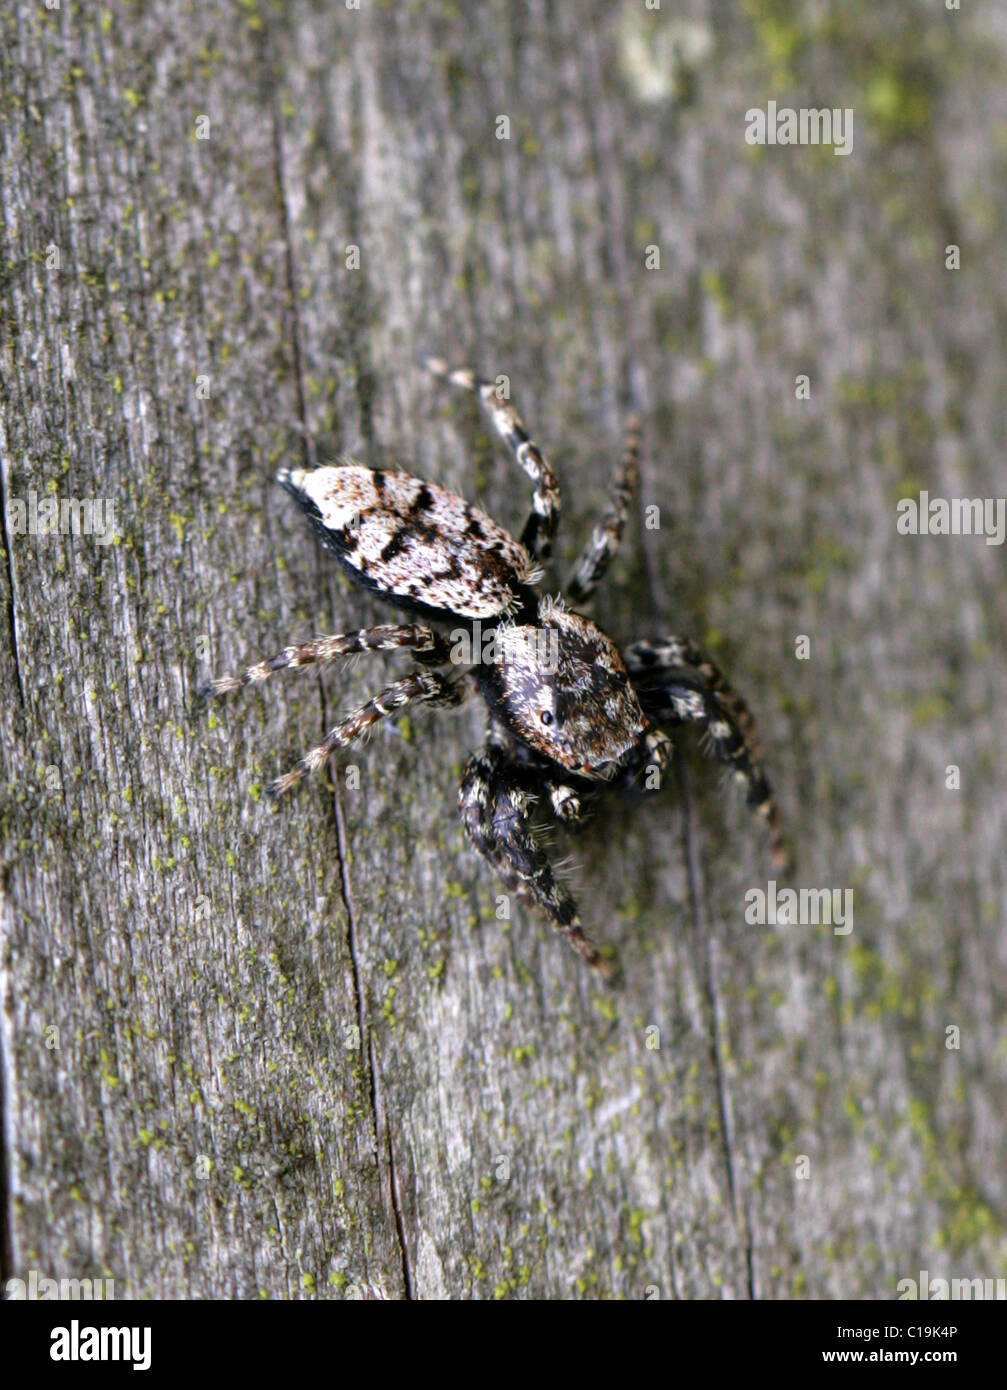 Zebra Thomisidae, Salticus scenicus, Araneae, amphibiens, Arachnides. Banque D'Images